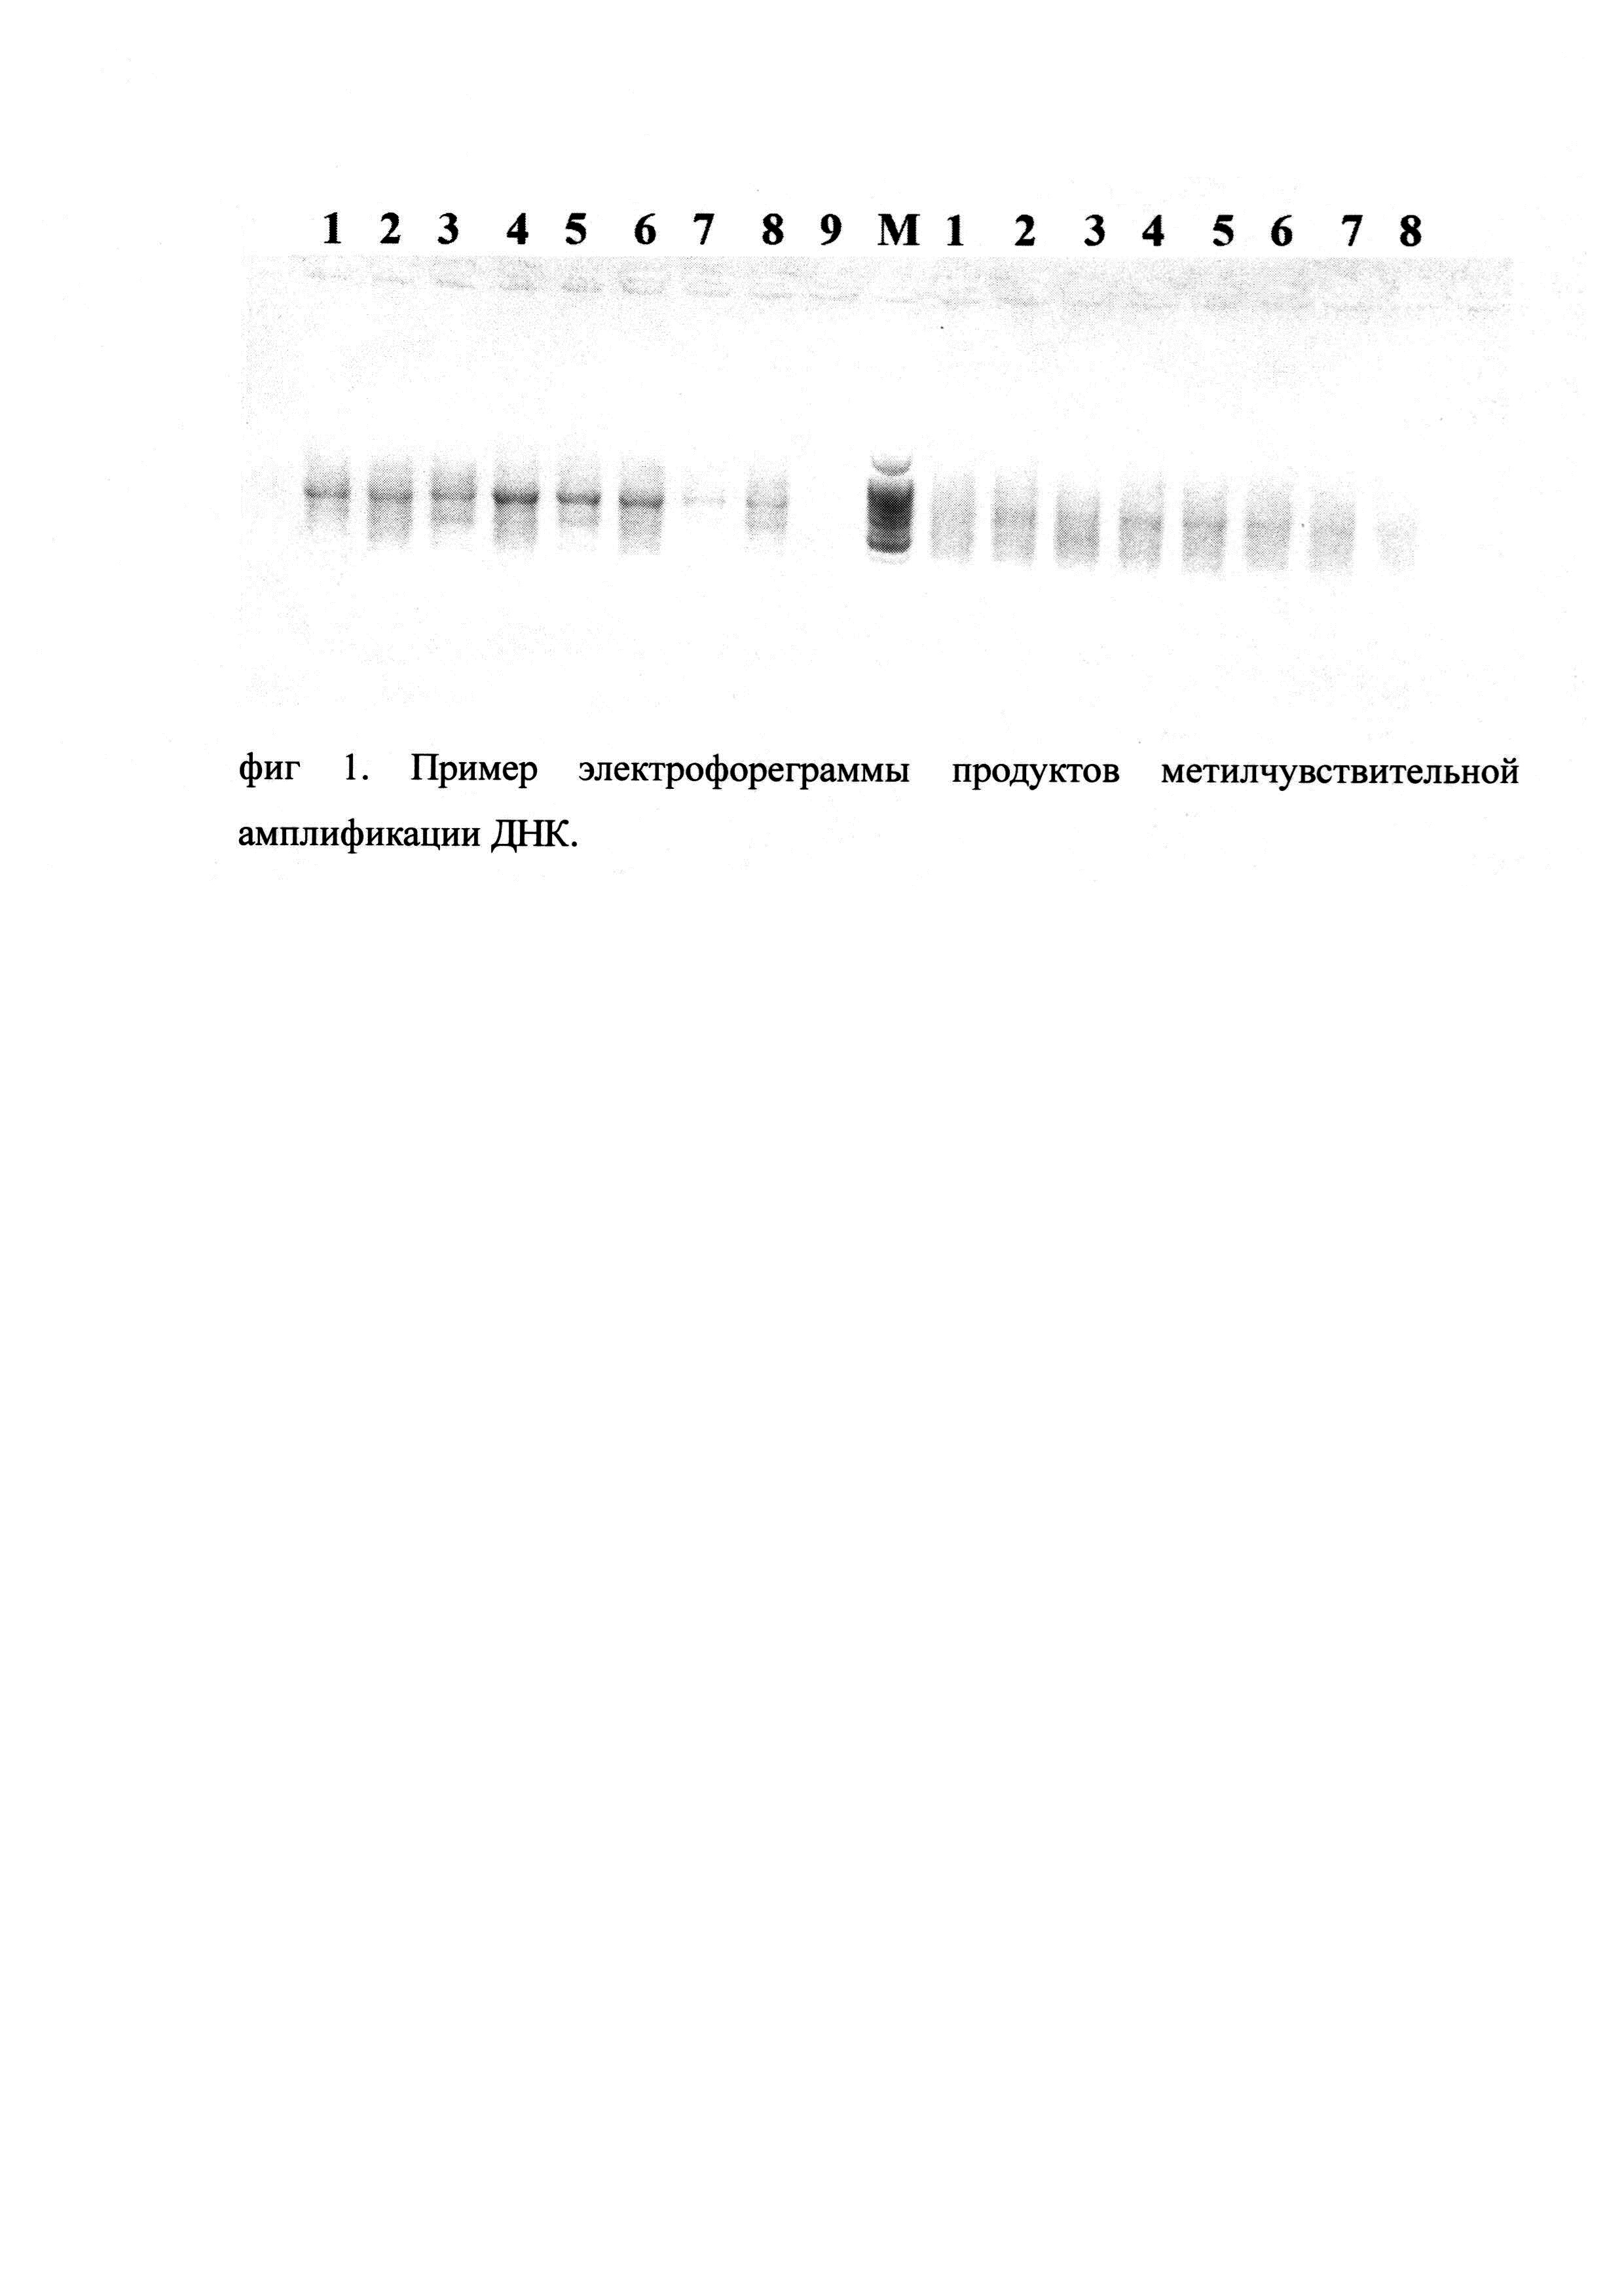 Набор синтетических олигонуклеотидов для проведения метилчувствительной амплификации ДНК